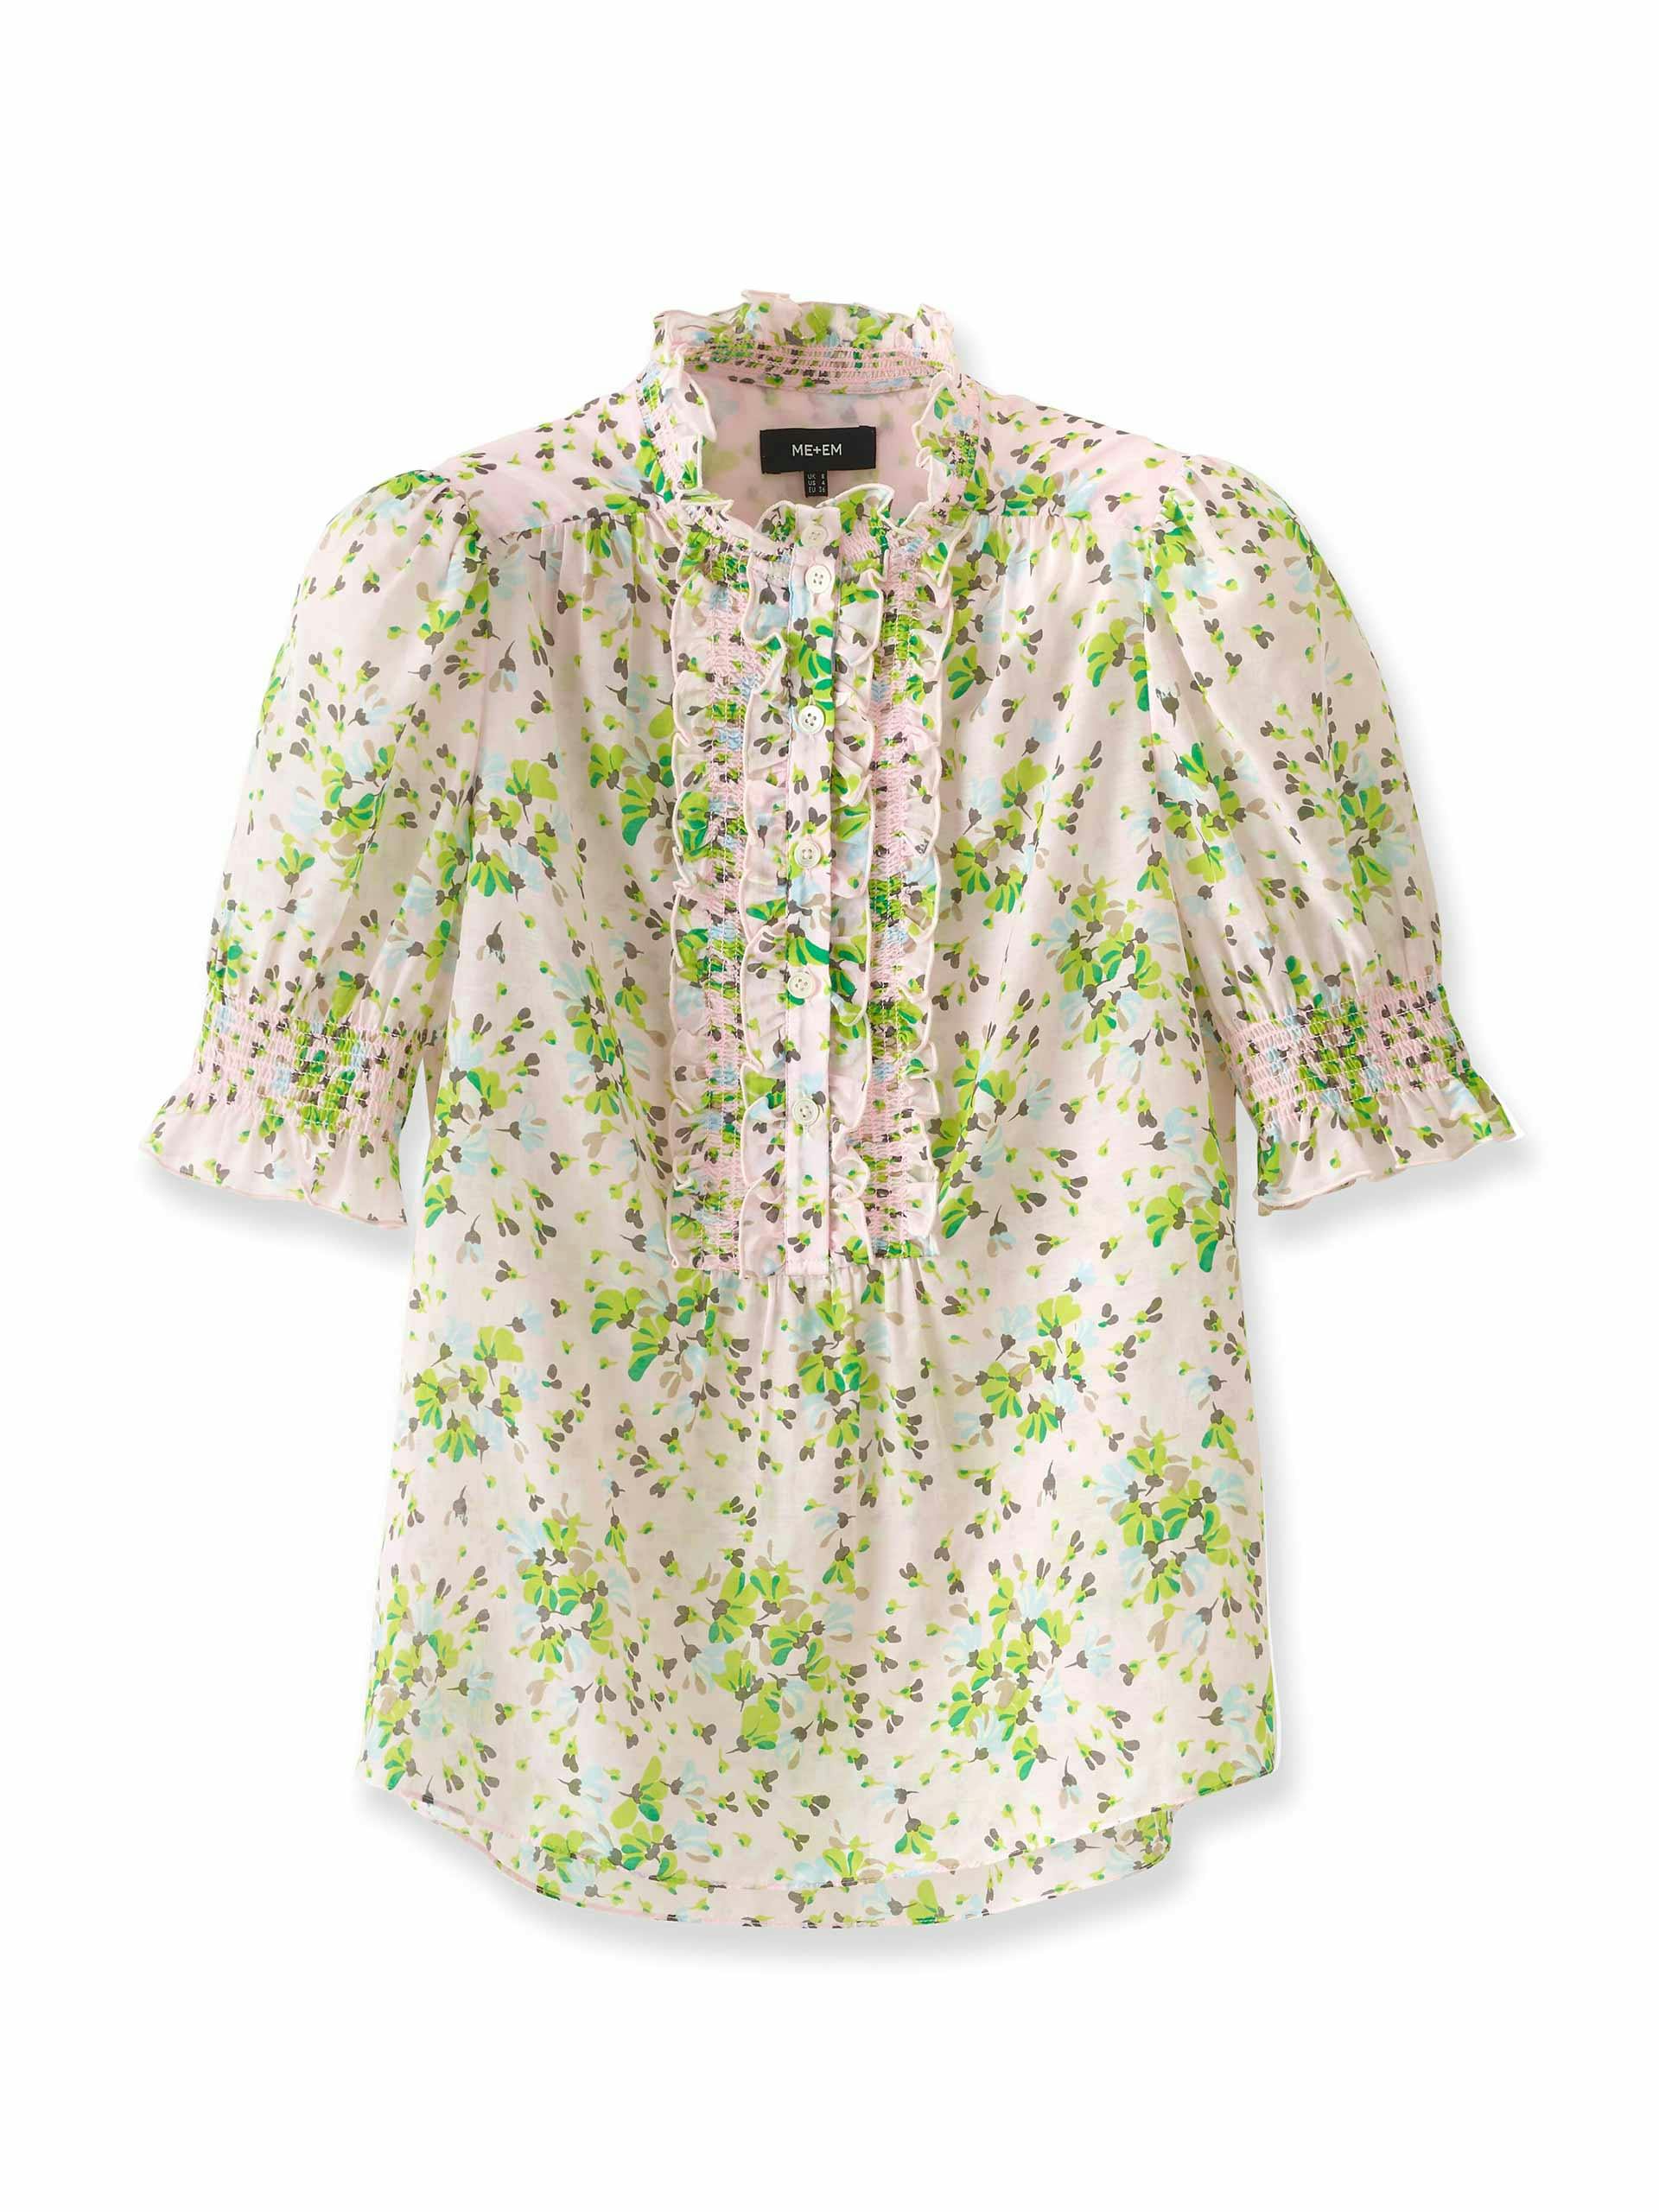 Petal print blouse